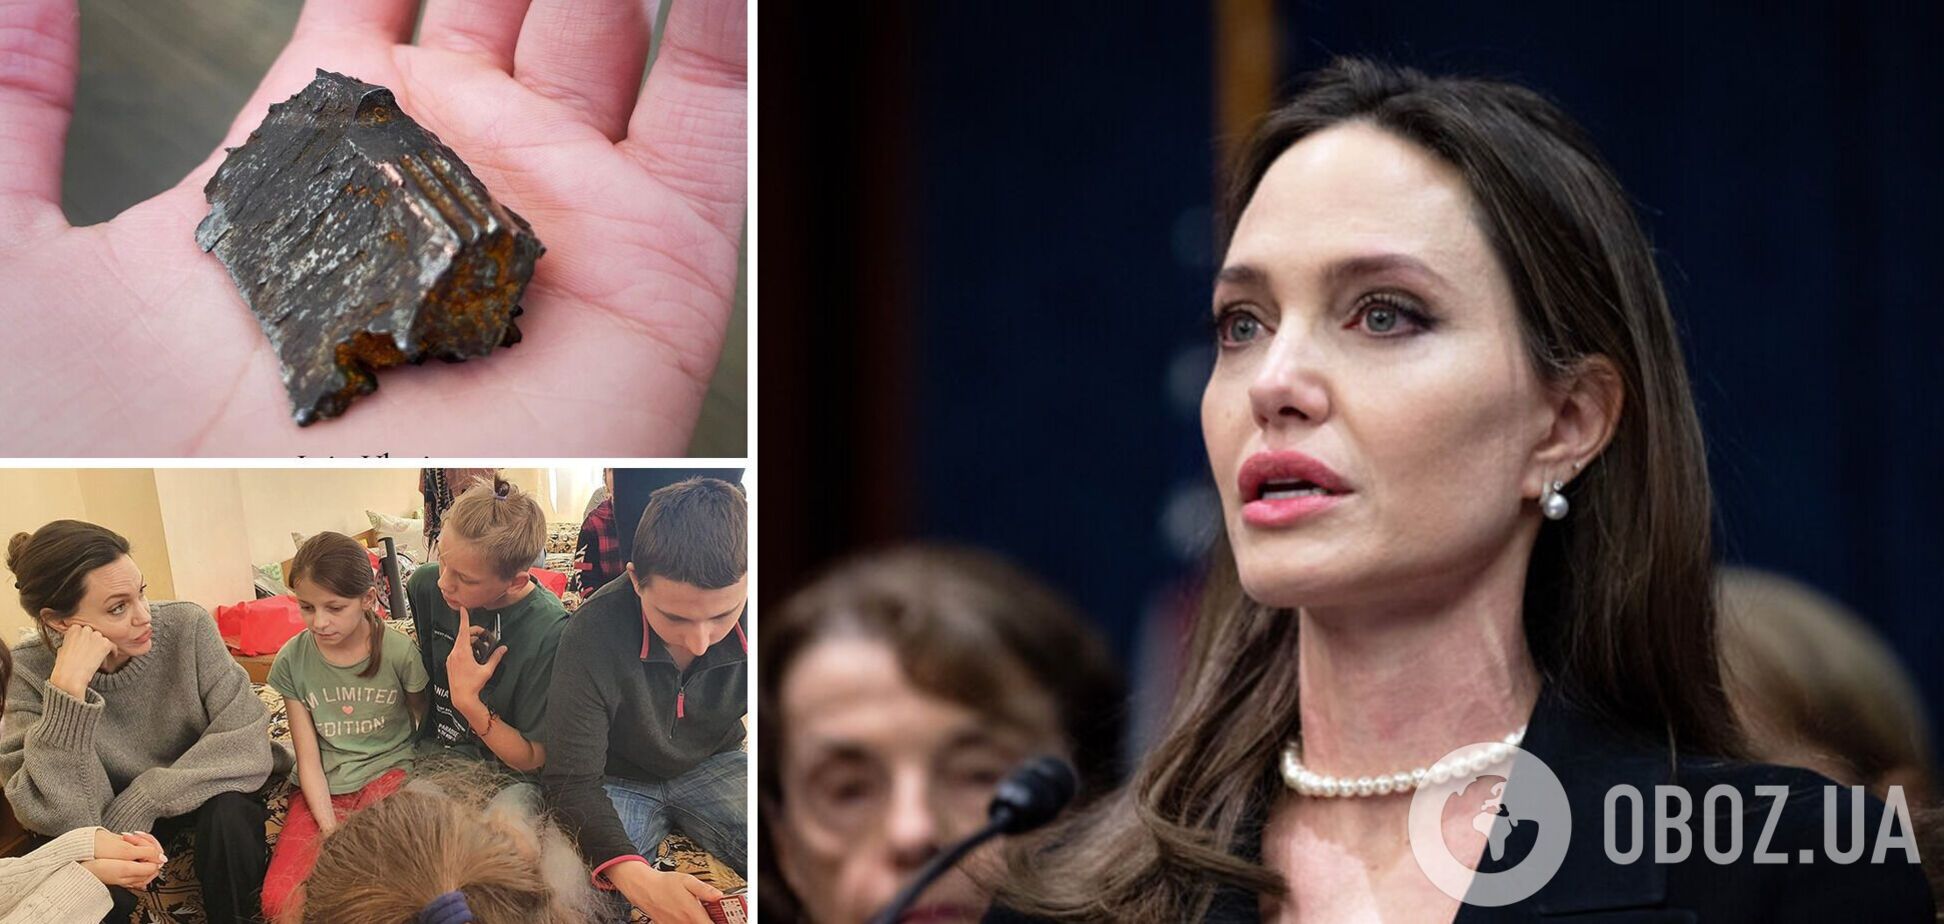 Анджеліна Джолі показала уламок бомби, привезений зі Львова: його знайшла маленька дівчинка. Фото